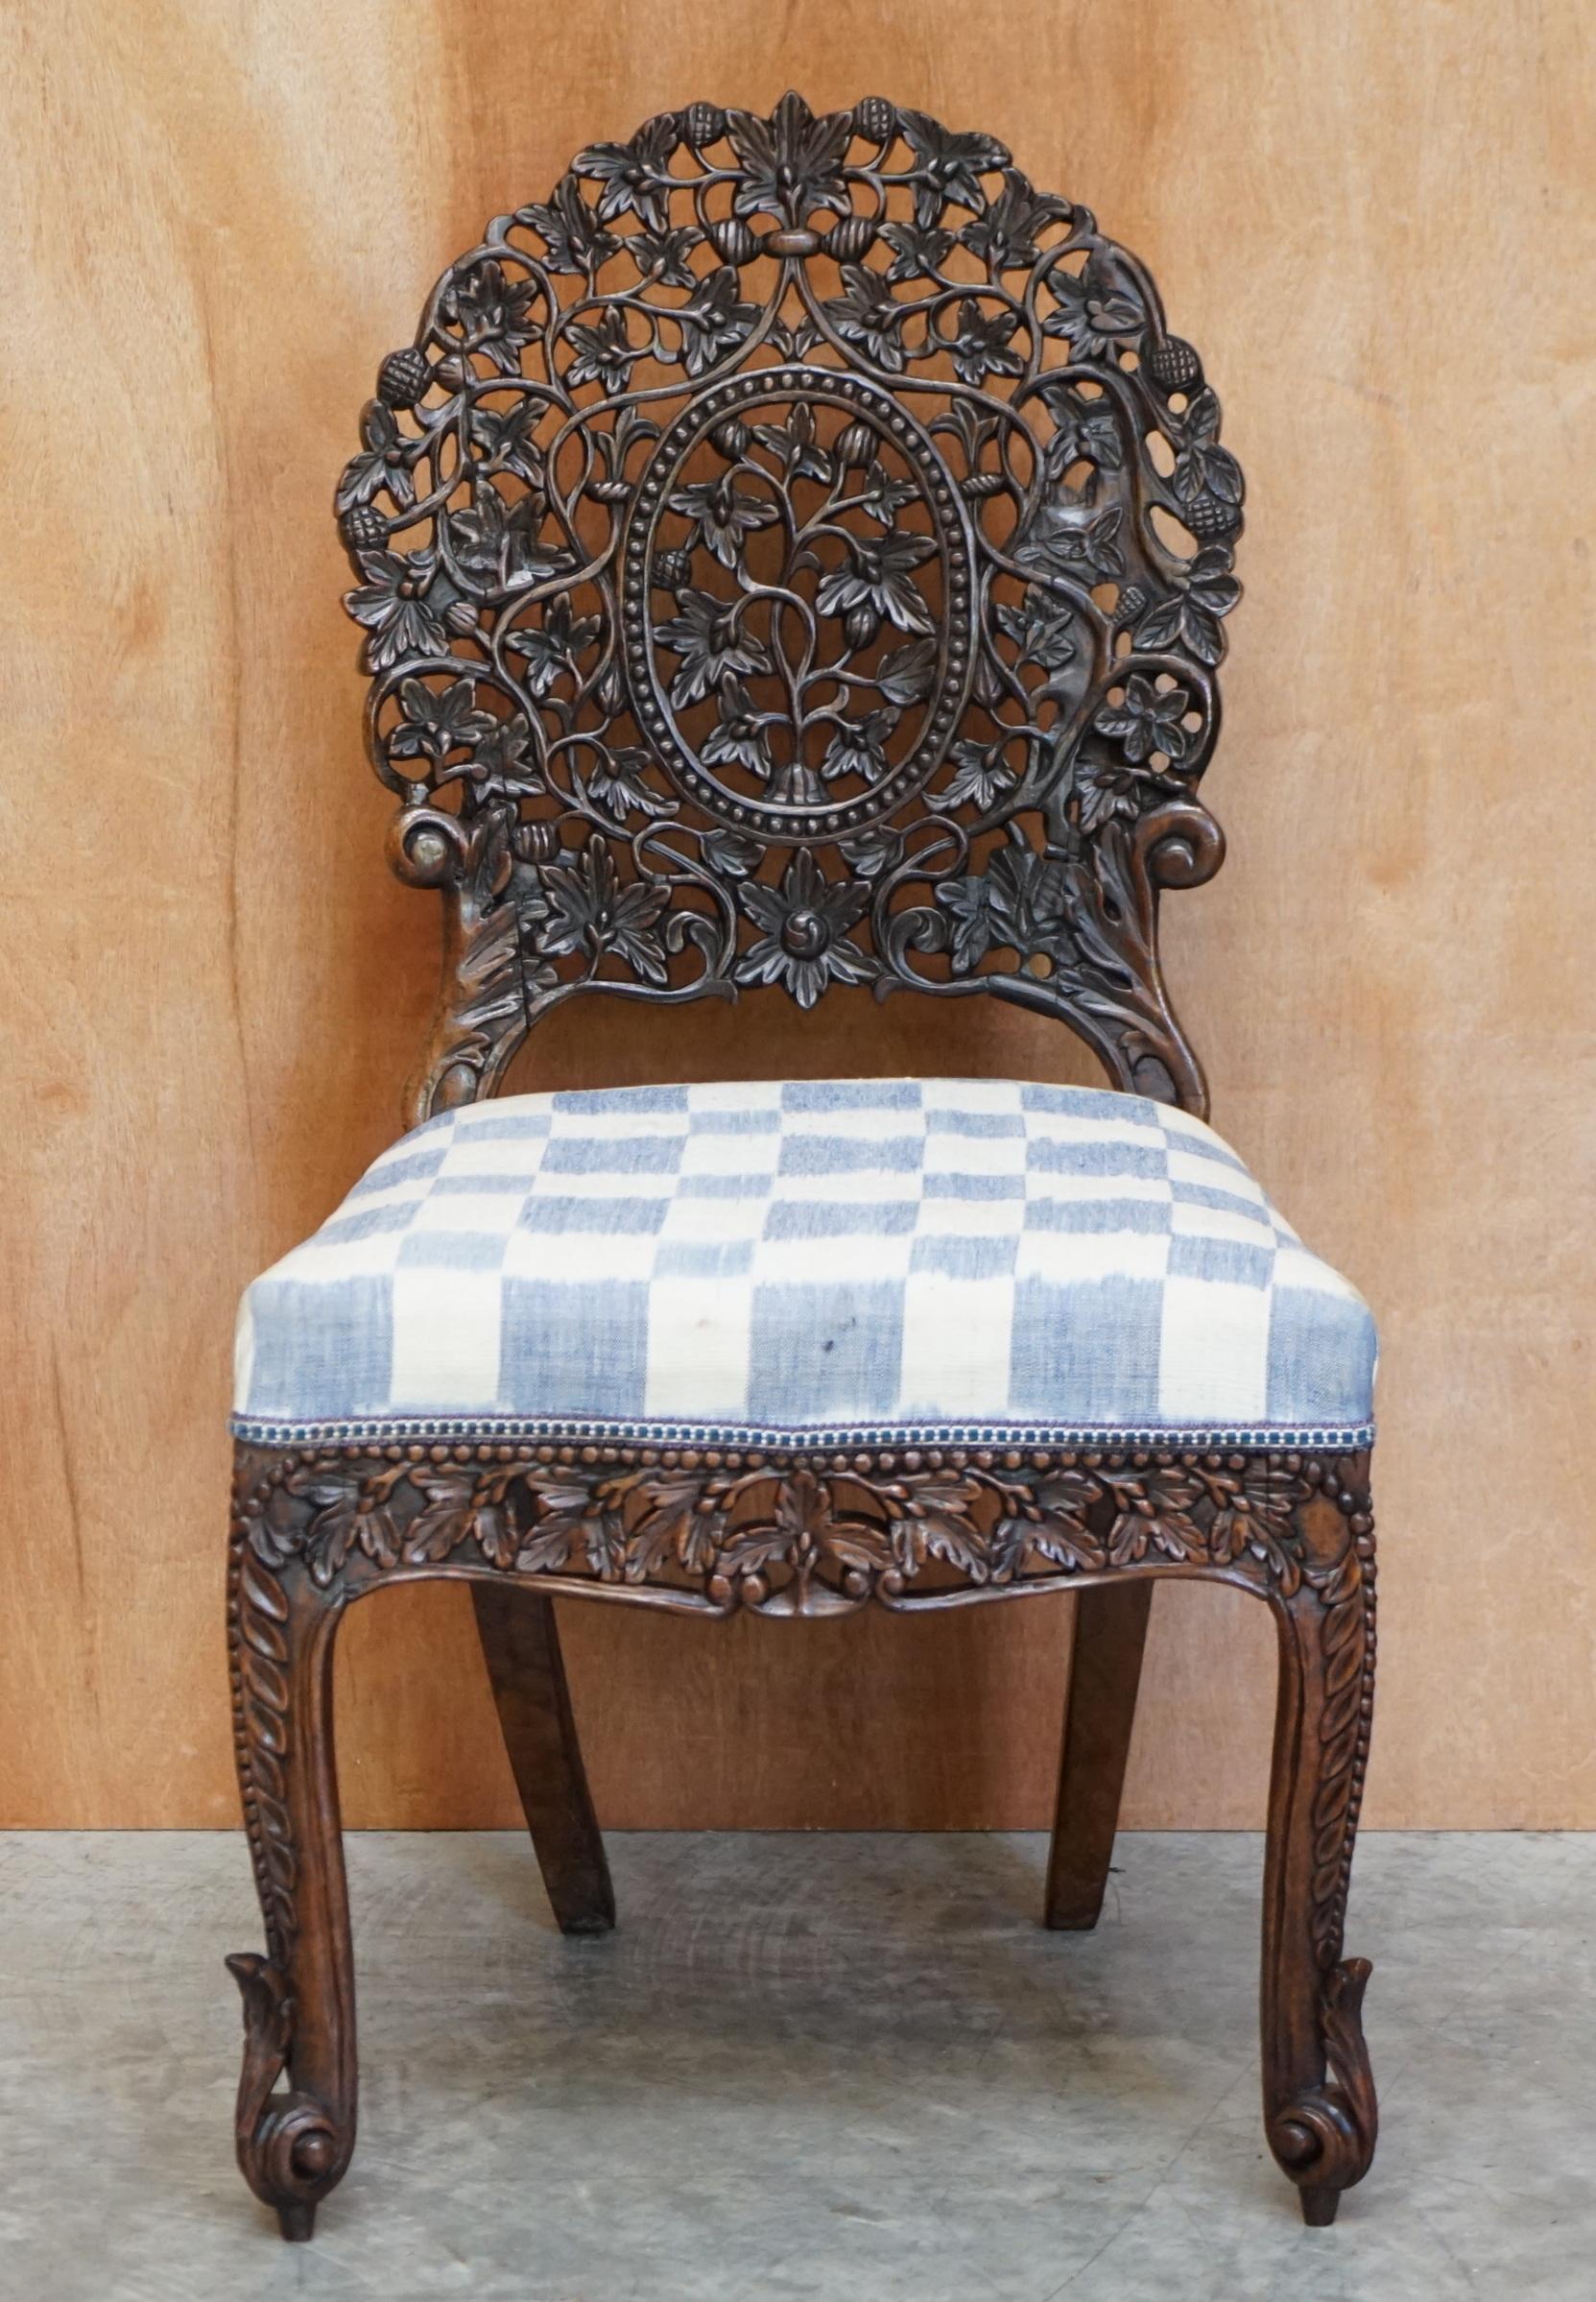 Wir freuen uns, diesen originalen handgeschnitzten anglo-indischen burmesischen Stuhl aus massivem Hartholz zum Verkauf anbieten zu können

Der Zustand ist gut, er wurde restauriert und die Rahmen wurden überprüft, geklebt und geklammert, wo es